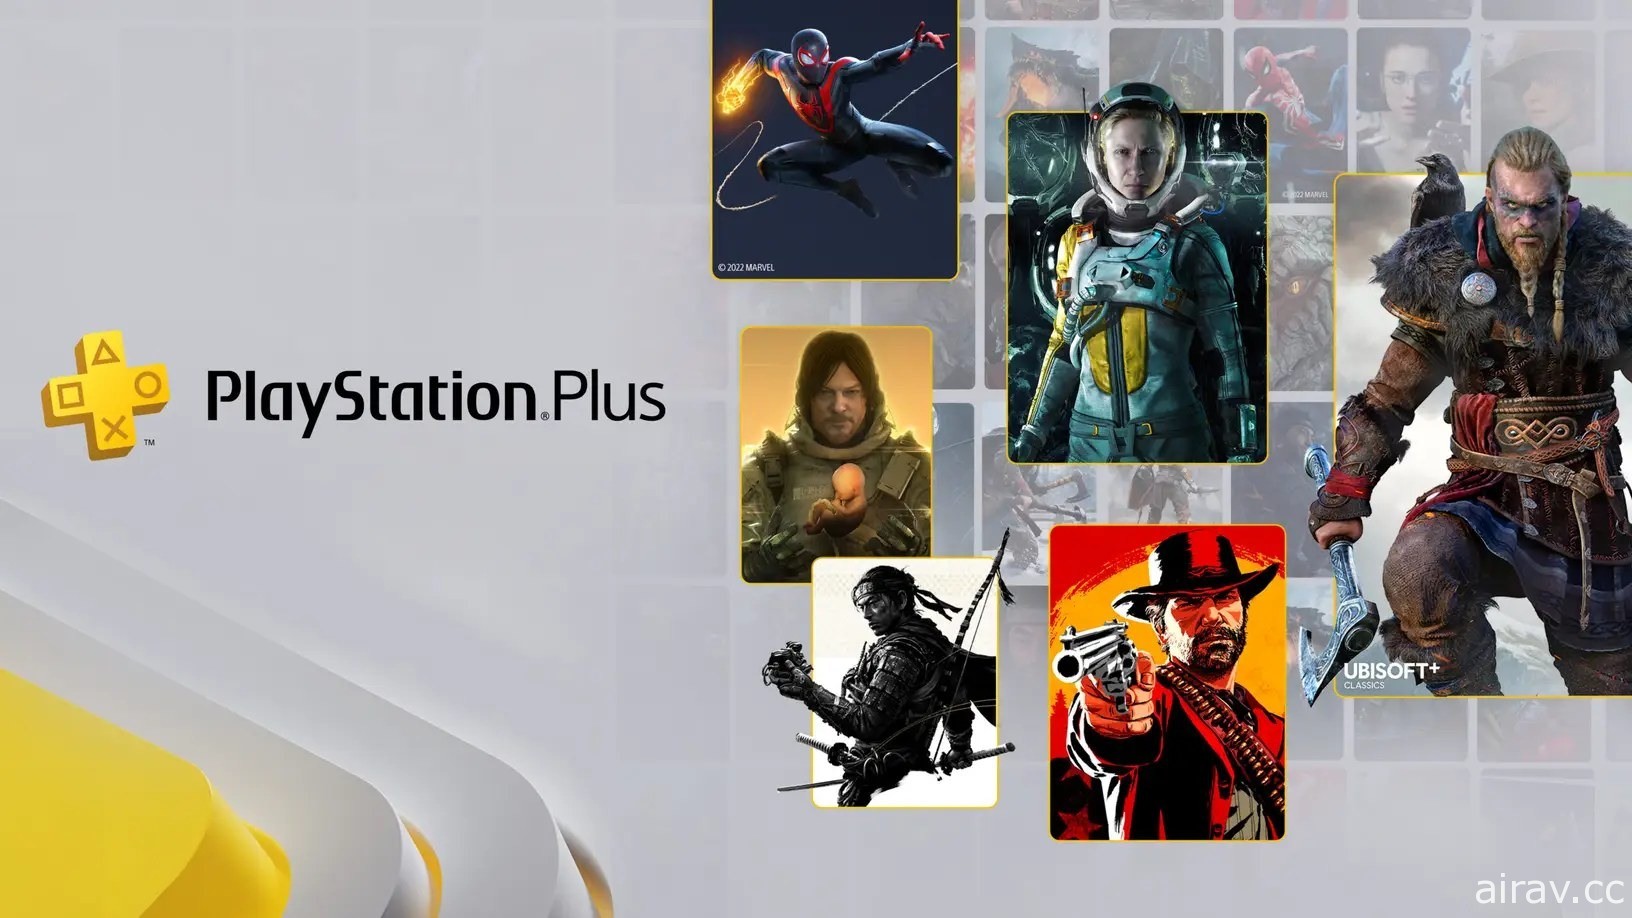 全新 PlayStation Plus 訂閱服務公布遊戲陣容 將包含《對馬戰鬼》《刺客教條》等眾多 3A 大作